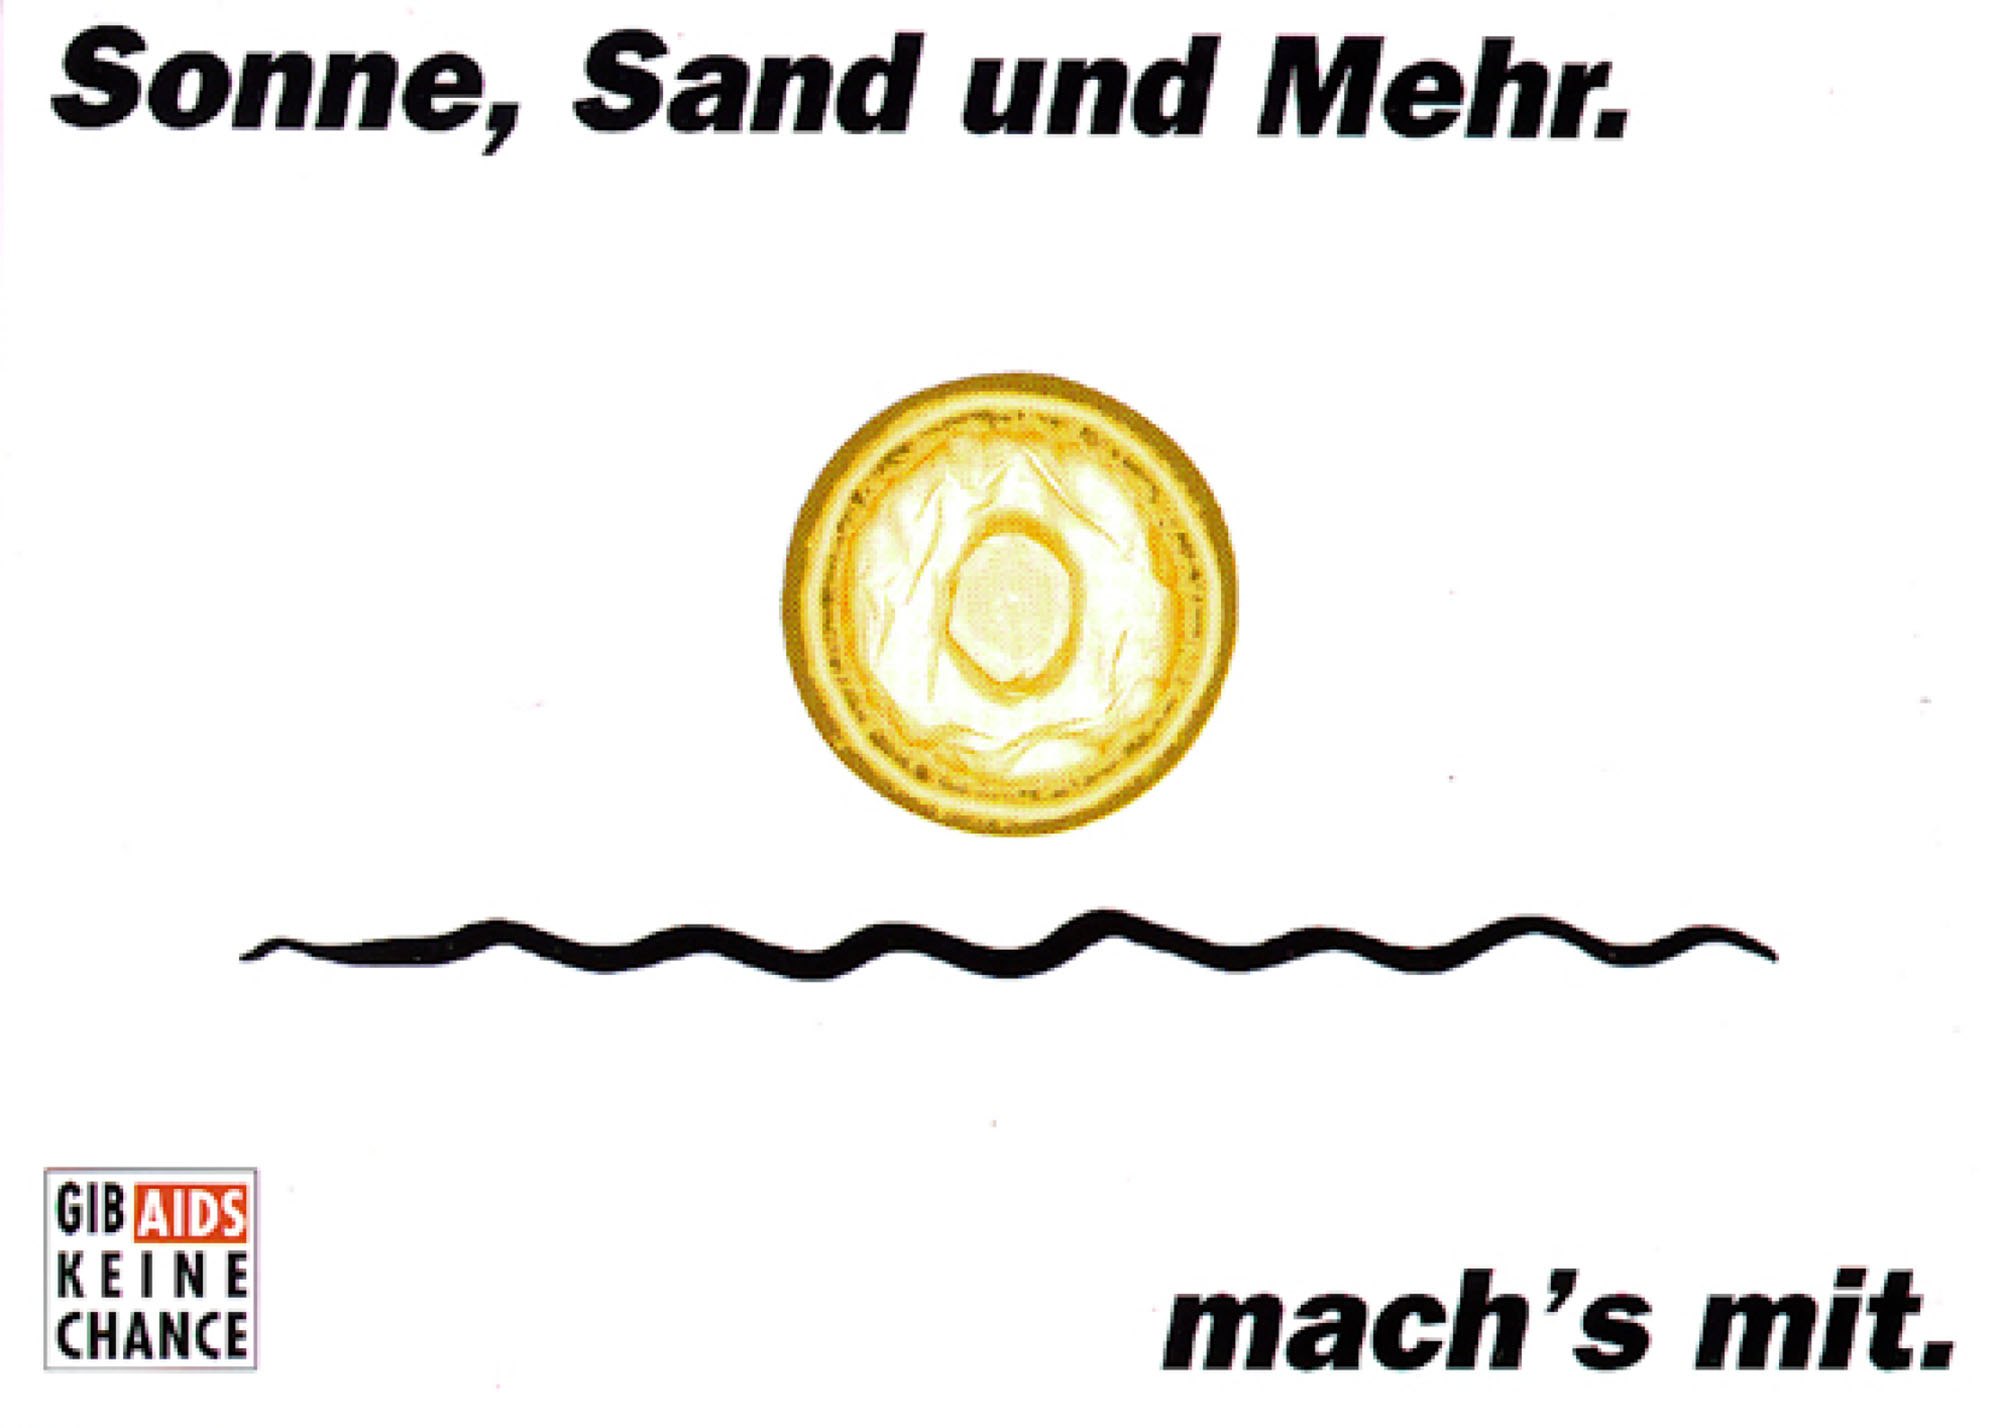 Gestaltet: Guido Meyer, Marcel Kolvenbach, Betreut: Wilfried Korfmacher, Titel: Gib Aids keine Chance: Sonne, Sand und Mehr, Jahr: 2004